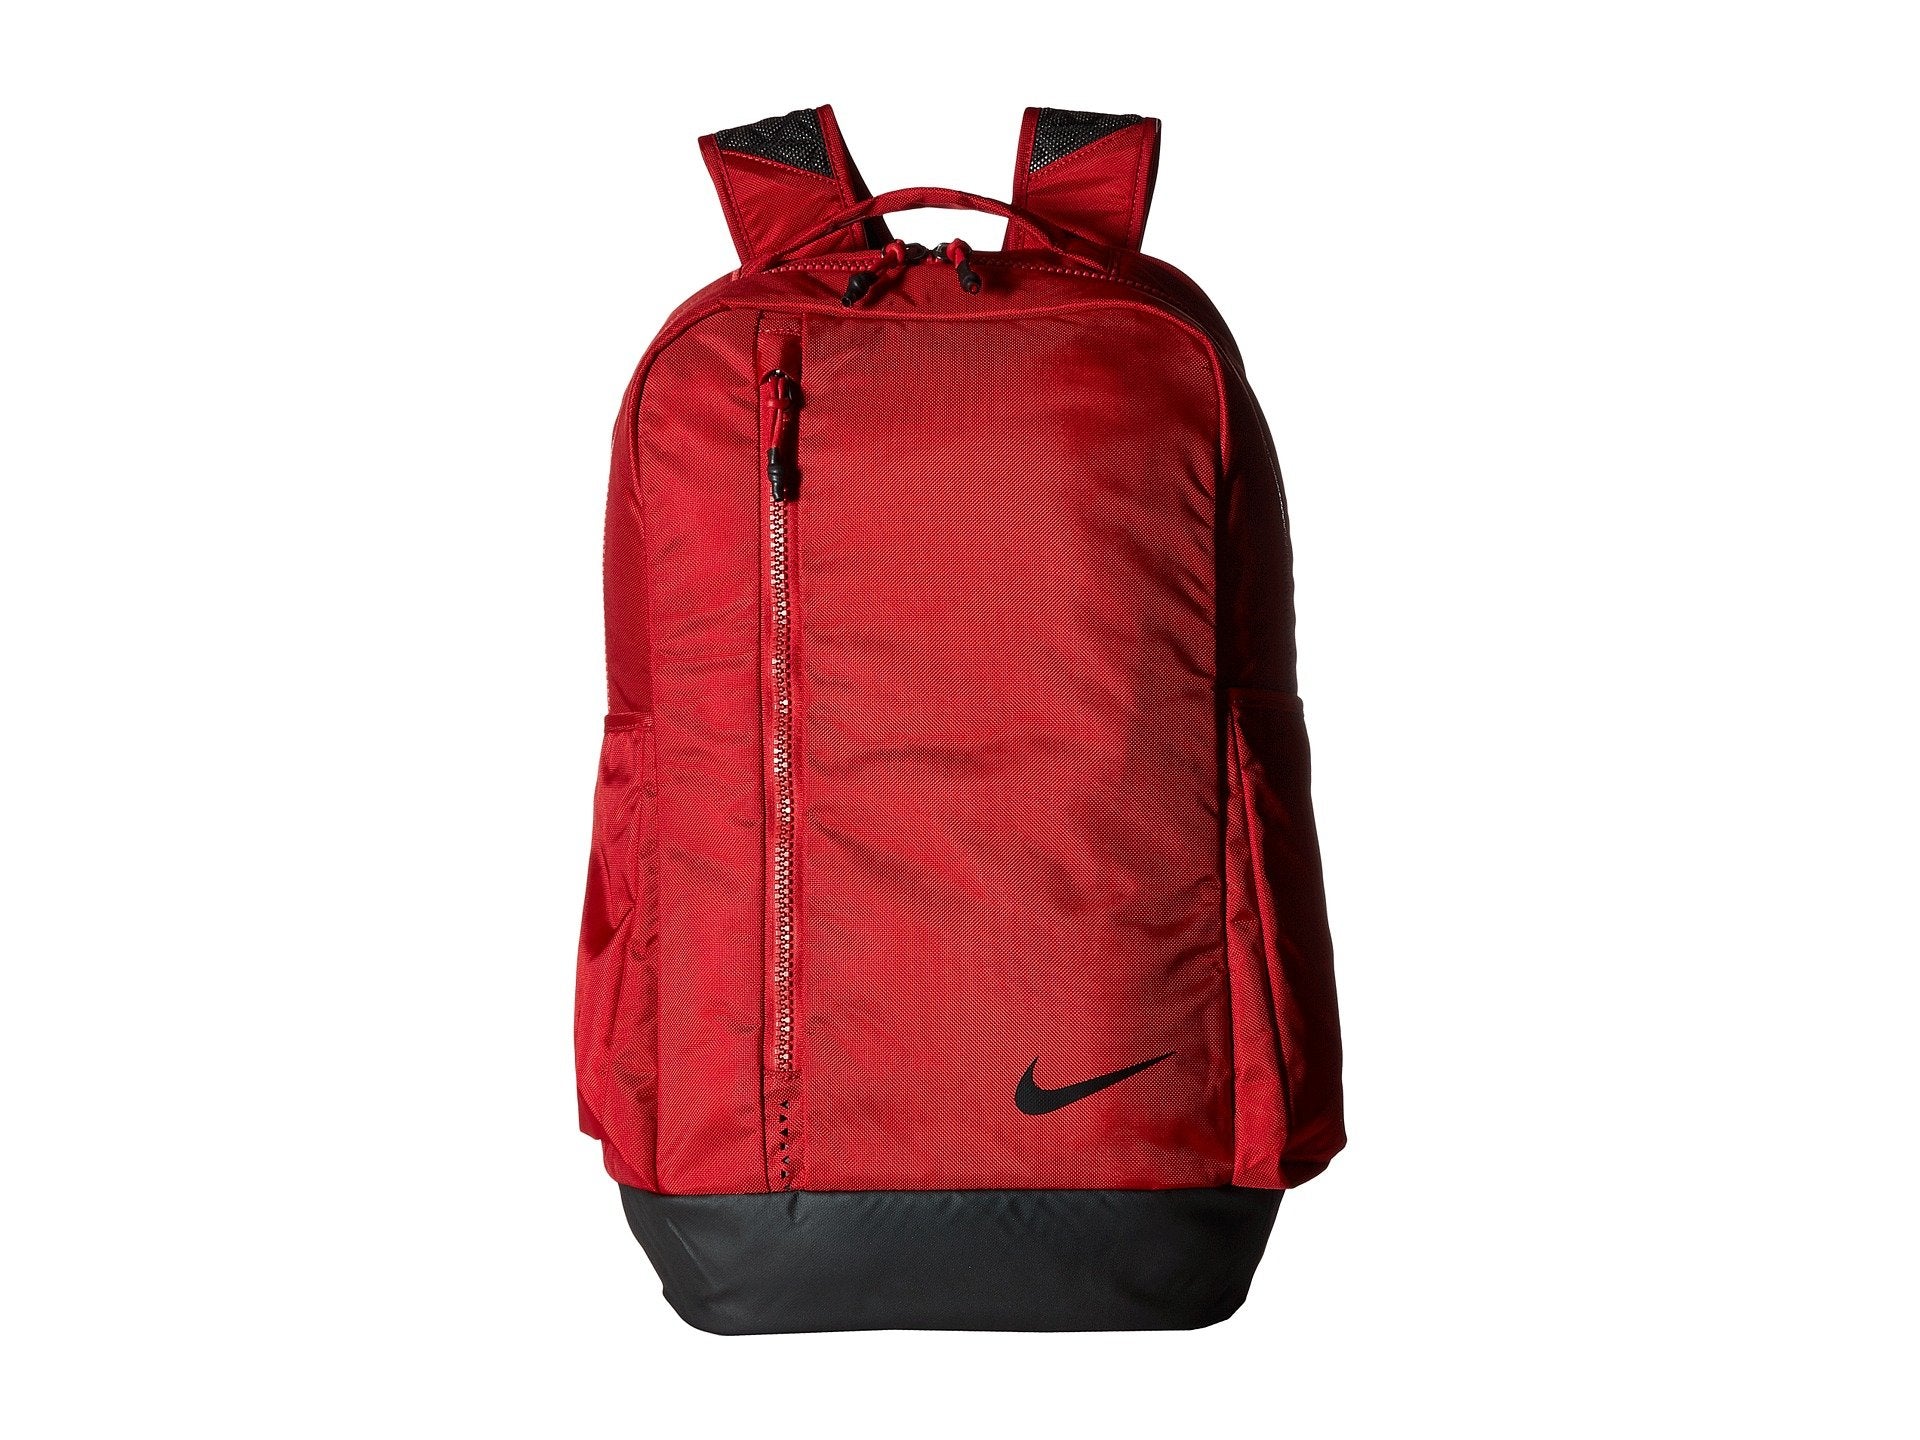 Nike Vapor Power 2.0 Training Backpack (Gym Red)– backpacks4less.com